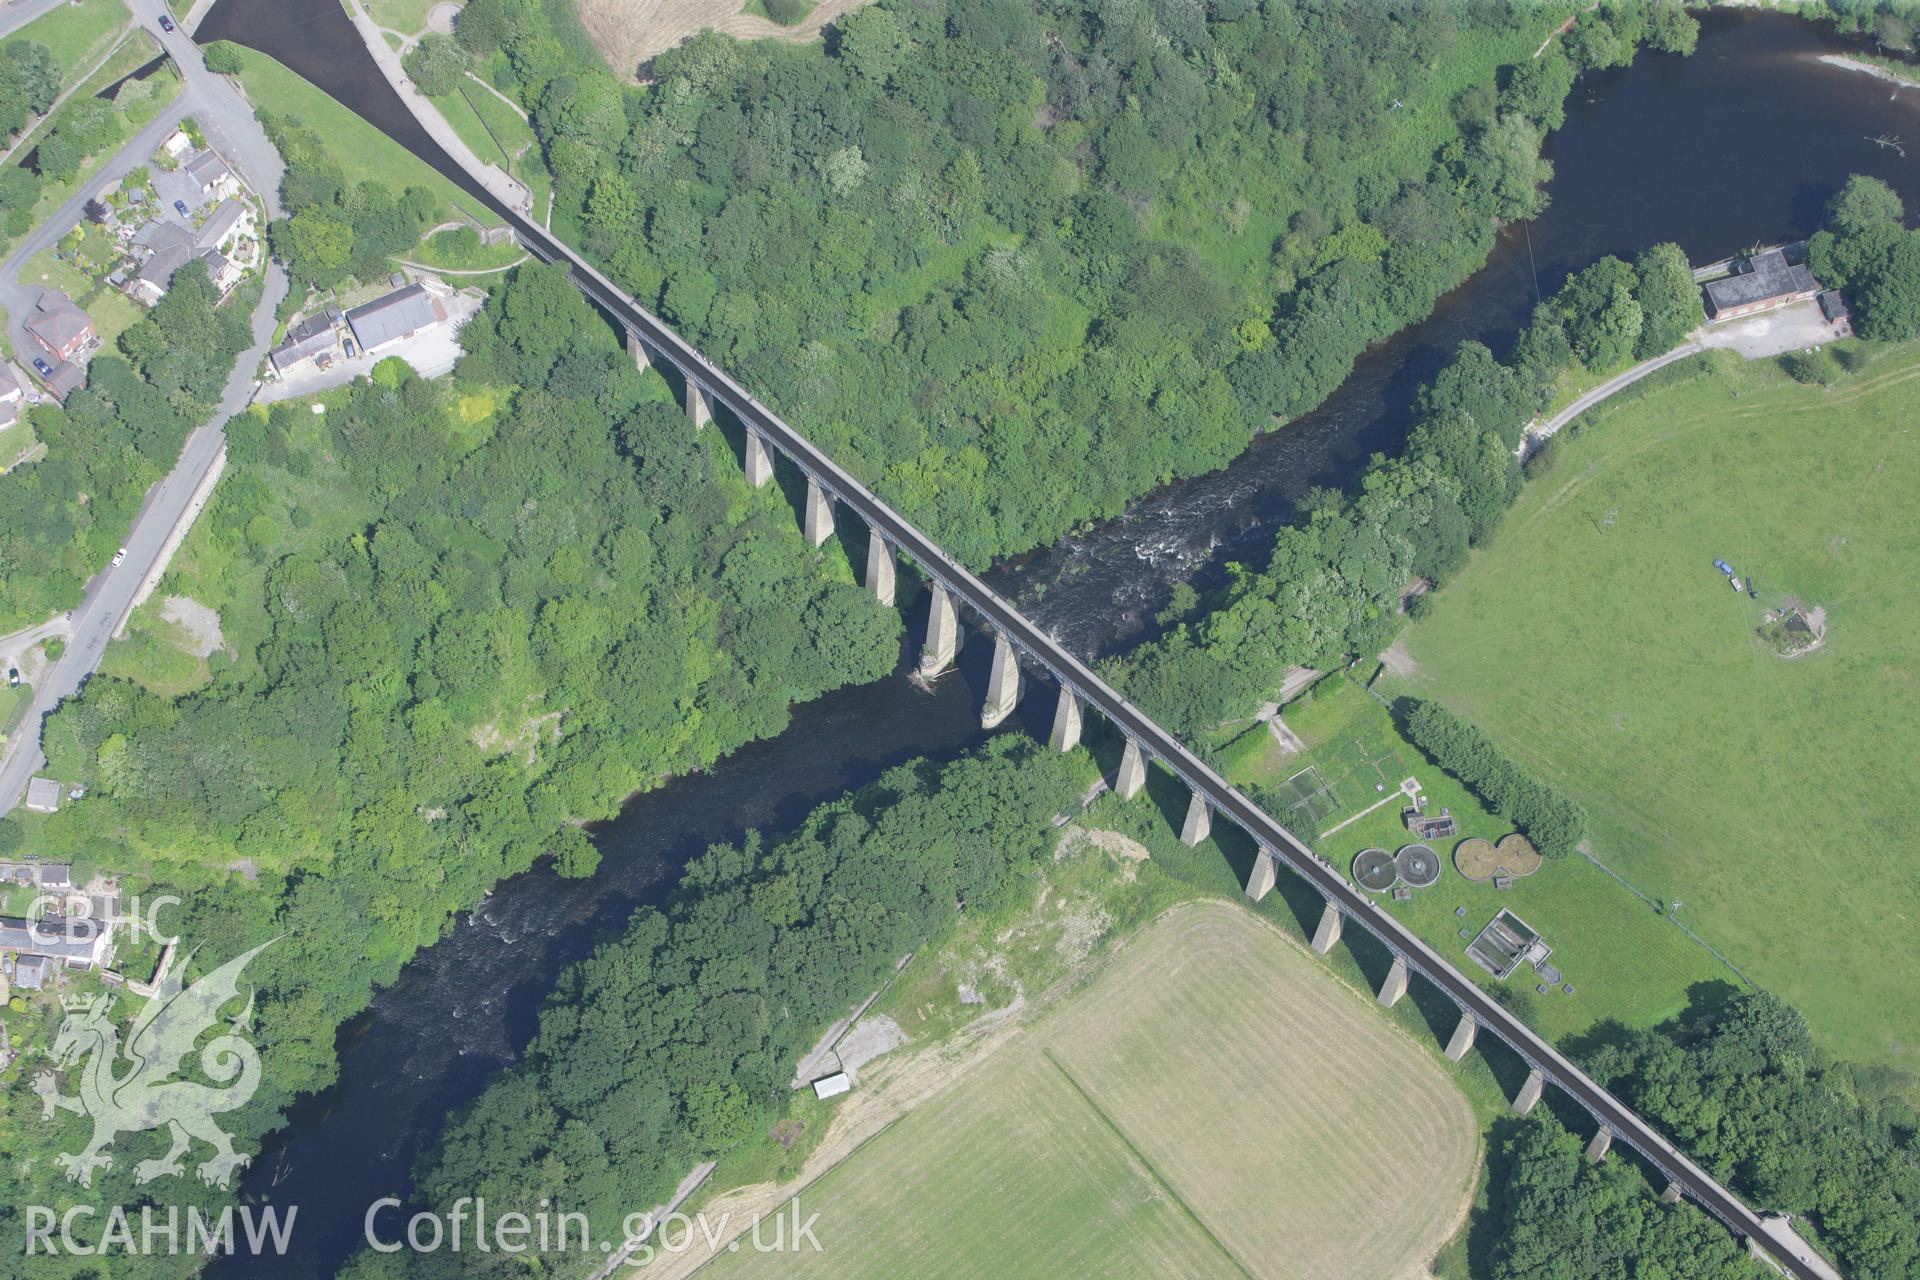 RCAHMW colour oblique photograph of Pontcysyllte Aqueduct, Ellesmere Canal. Taken by Toby Driver on 01/07/2008.